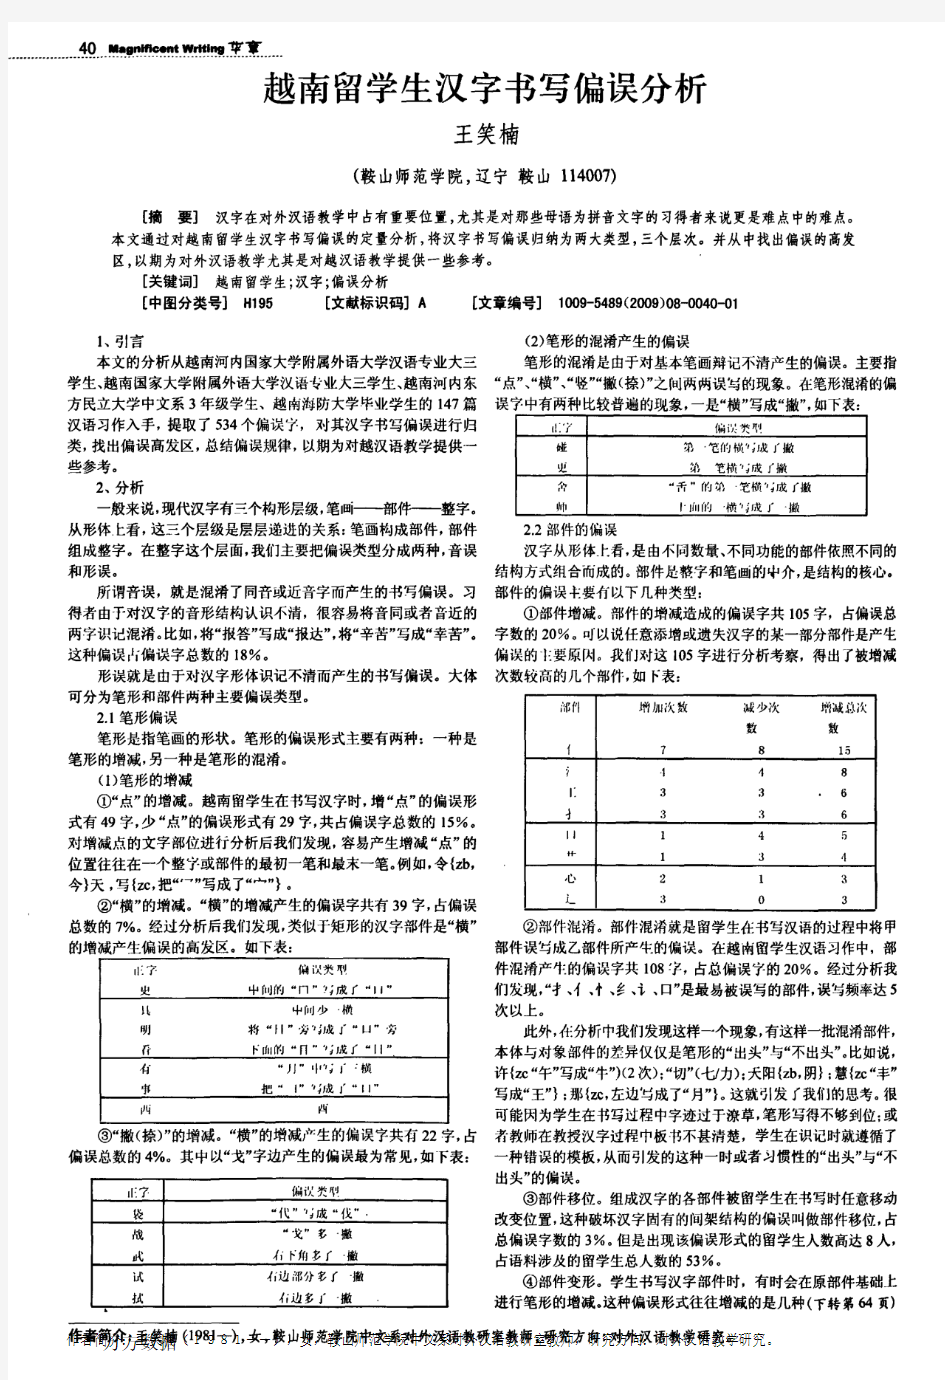 越南留学生汉字书写偏误分析